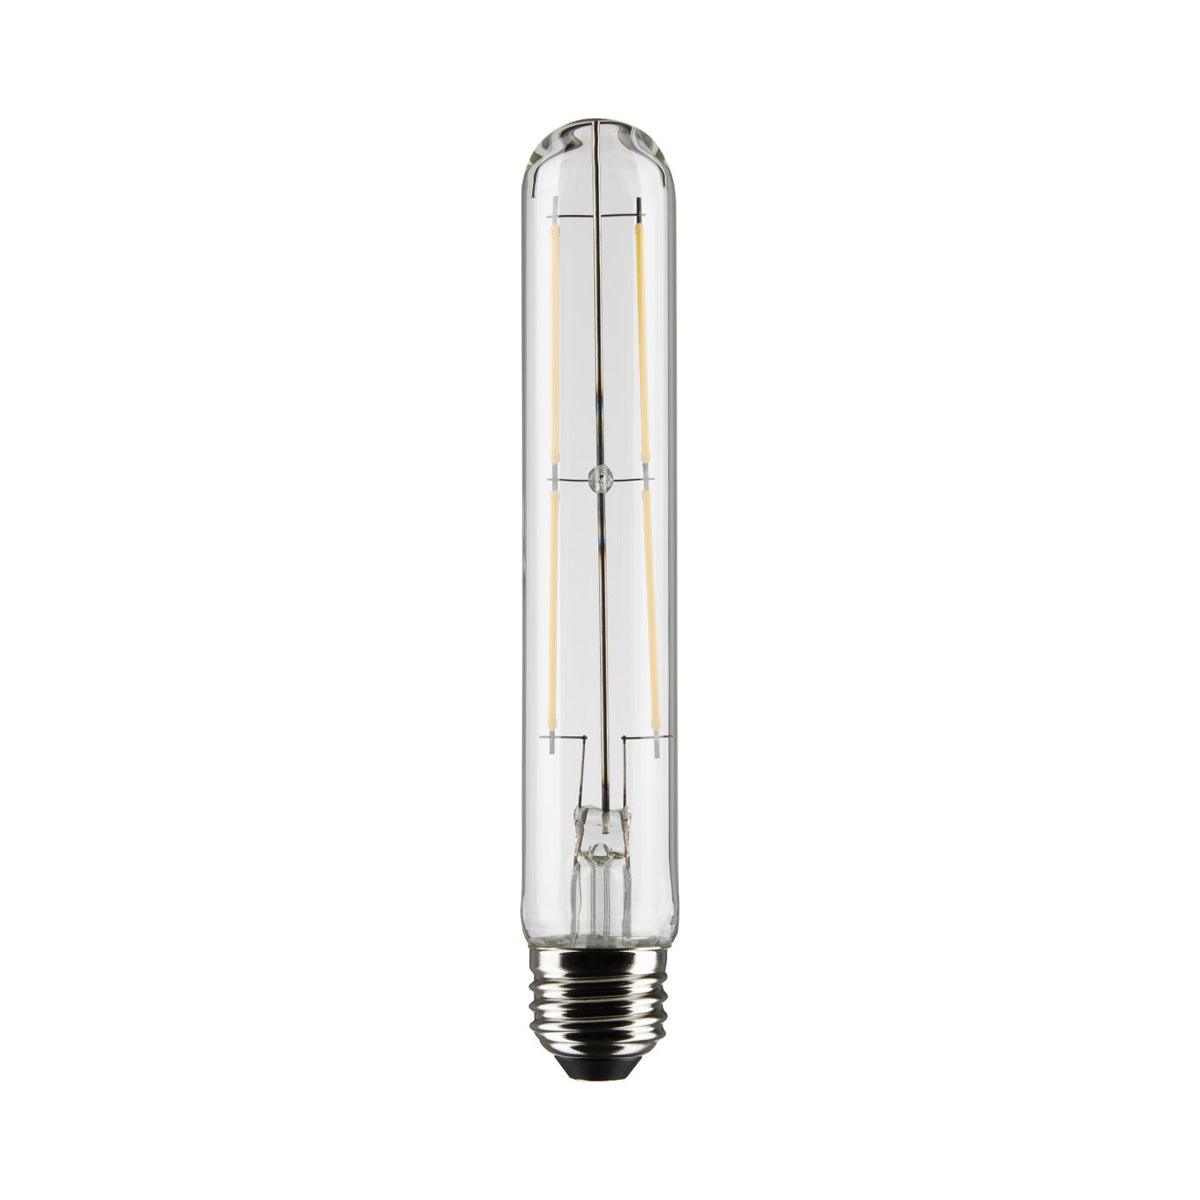 LED T9 Single Tube Bulb, 8 Watt, 800 Lumens, 2700K, E26 Medium Base, Clear Finish, Pack Of 2 - Bees Lighting